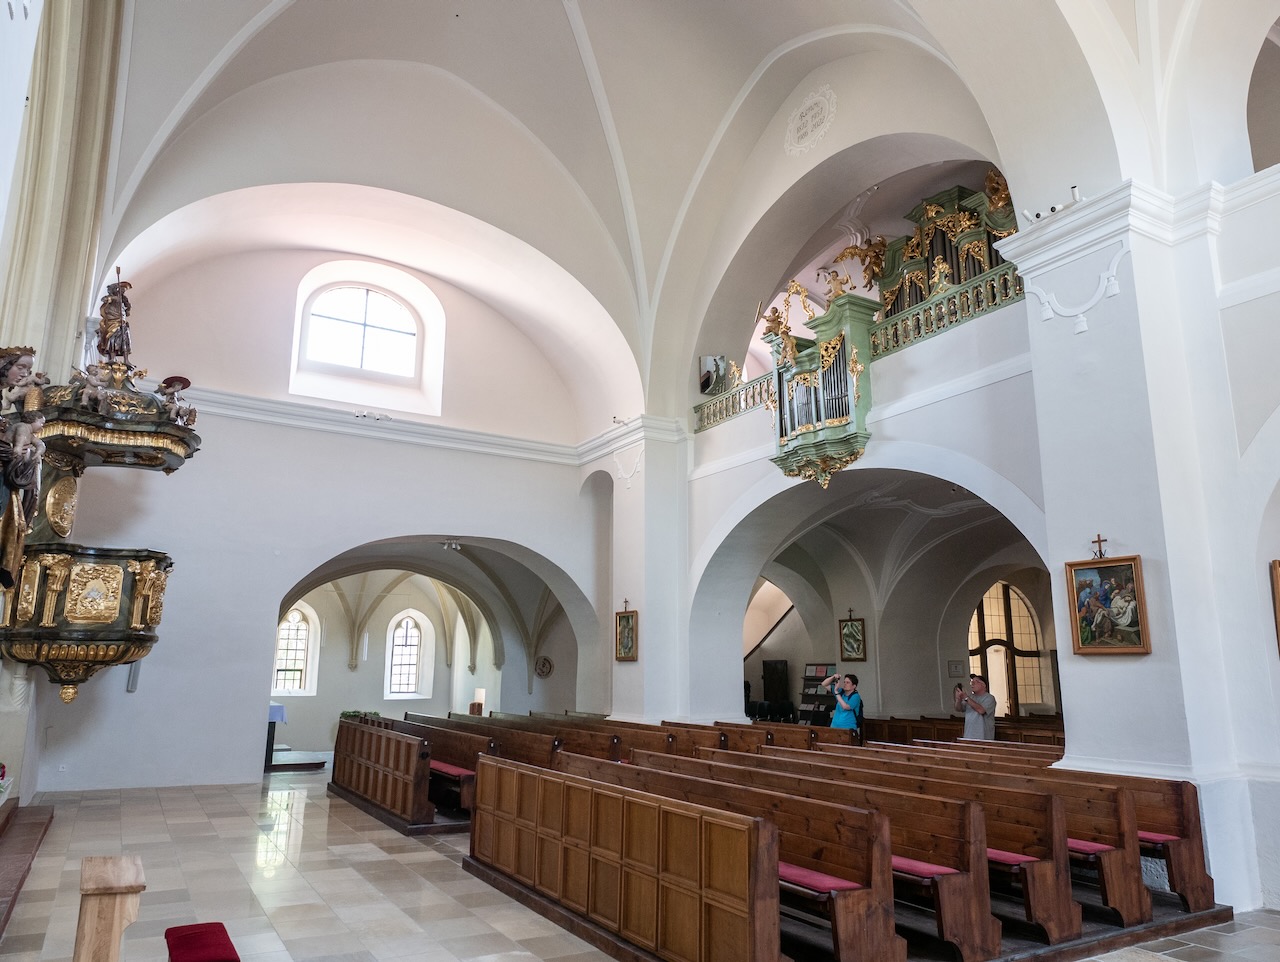 Innenansicht zur Rückseite aus dem nördlichen Seitenschiff mit Gatto-Orgel aus dem 18. Jh.